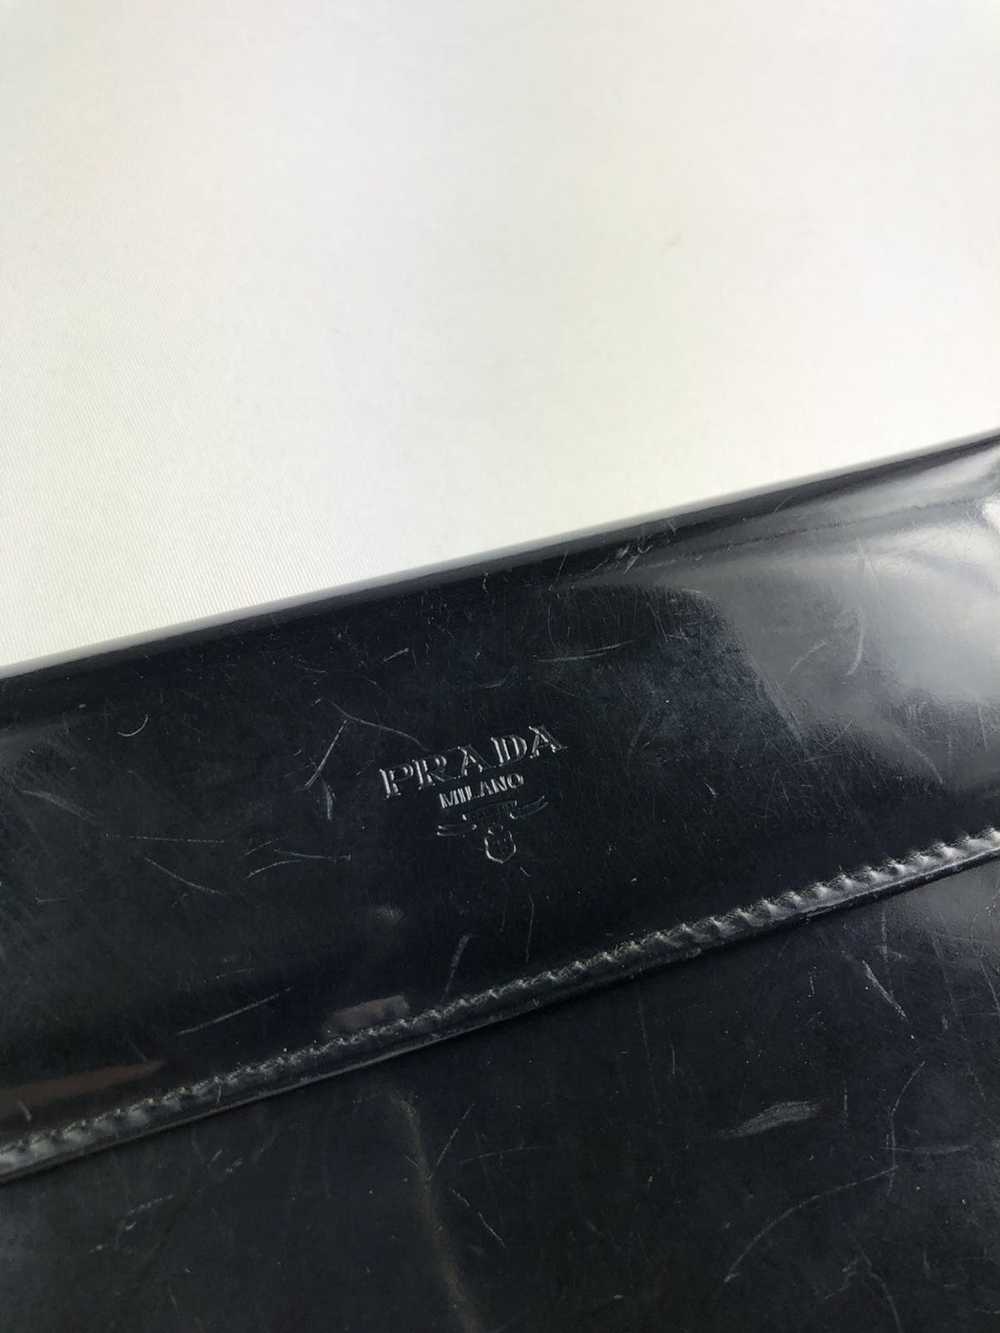 Prada Prada milano black leather trifold wallet - image 2